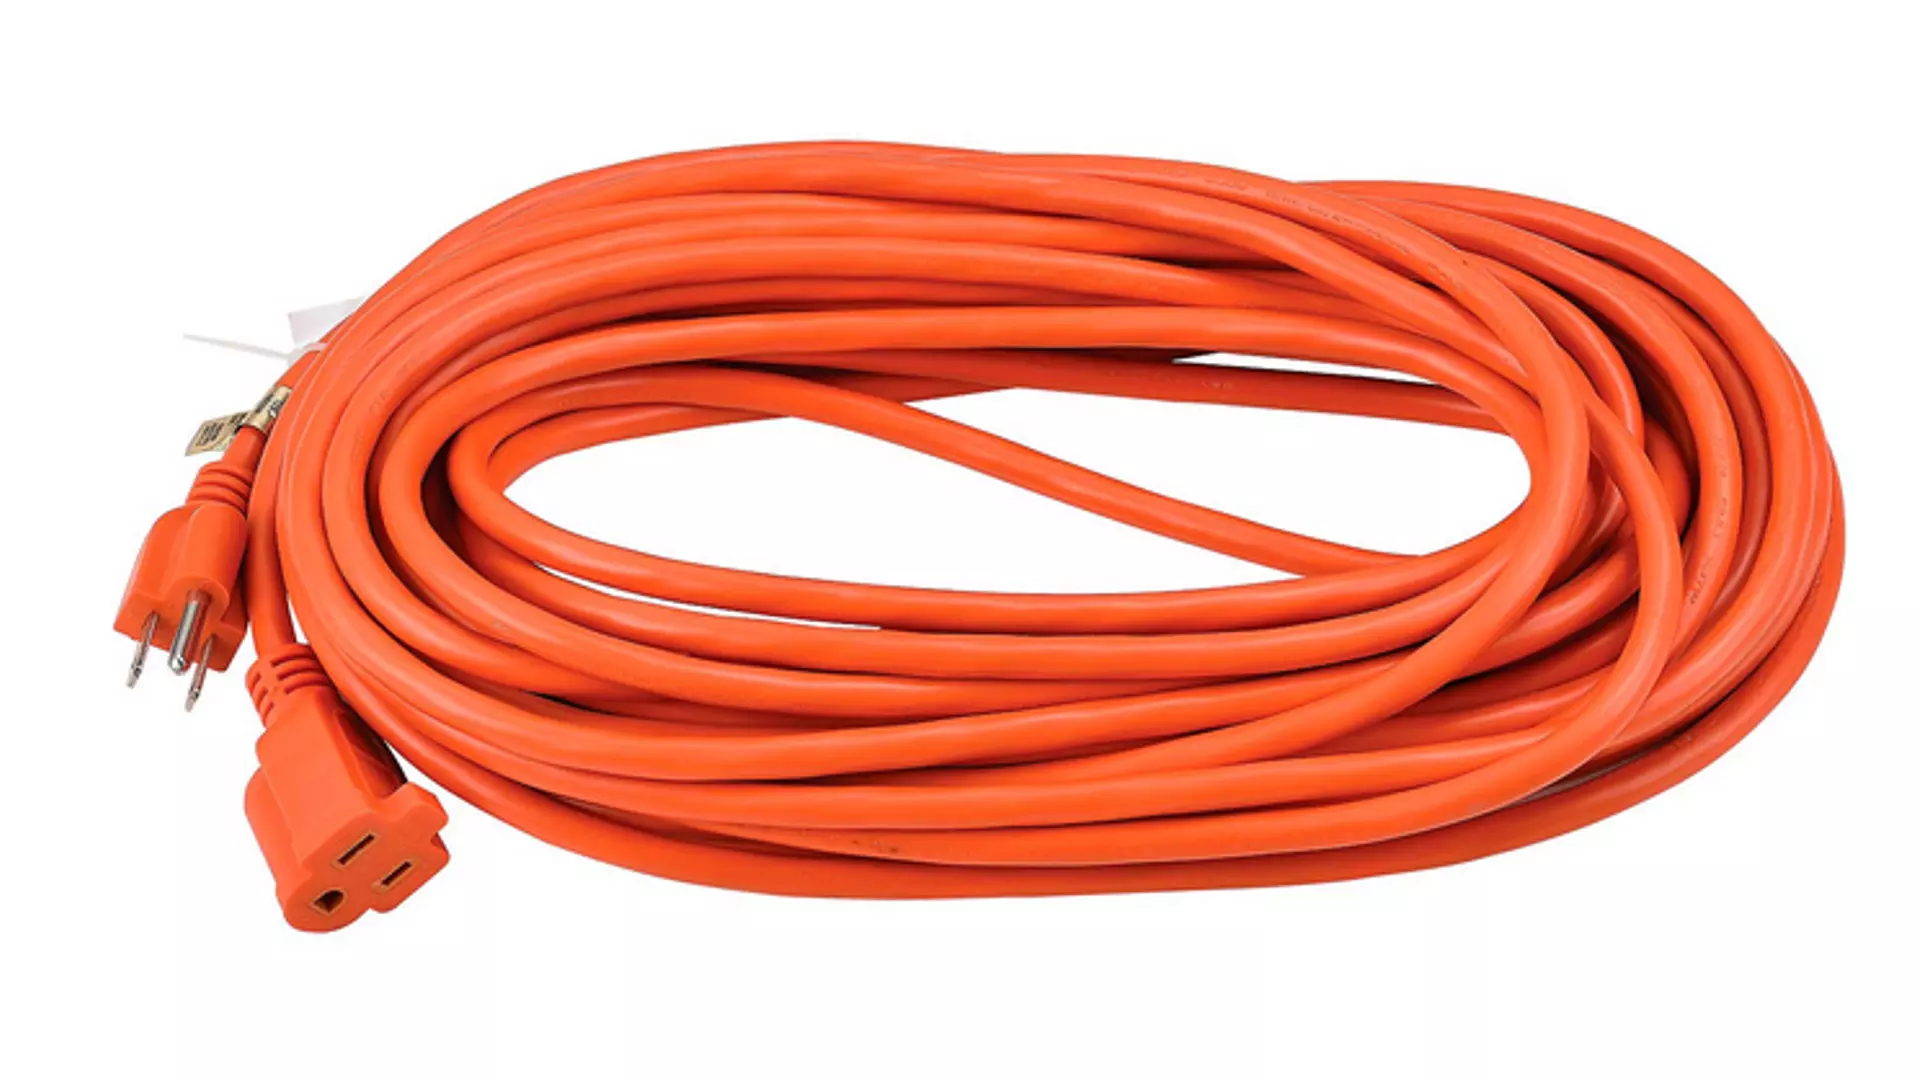 Heavy Orange extension Cord